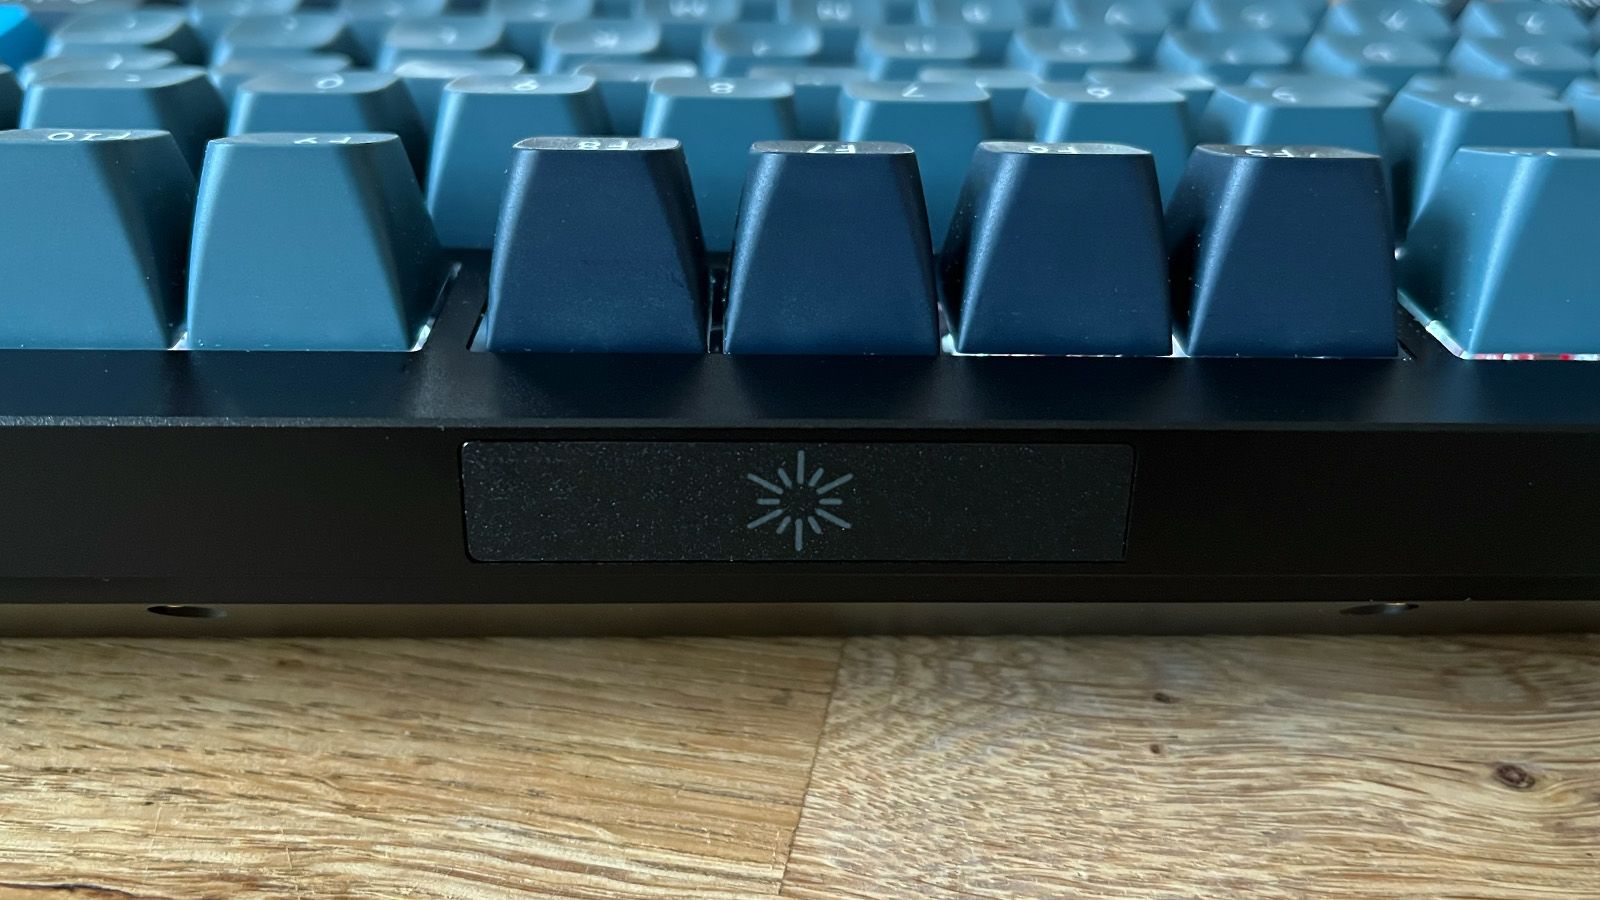 The best wireless mechanical keyboards